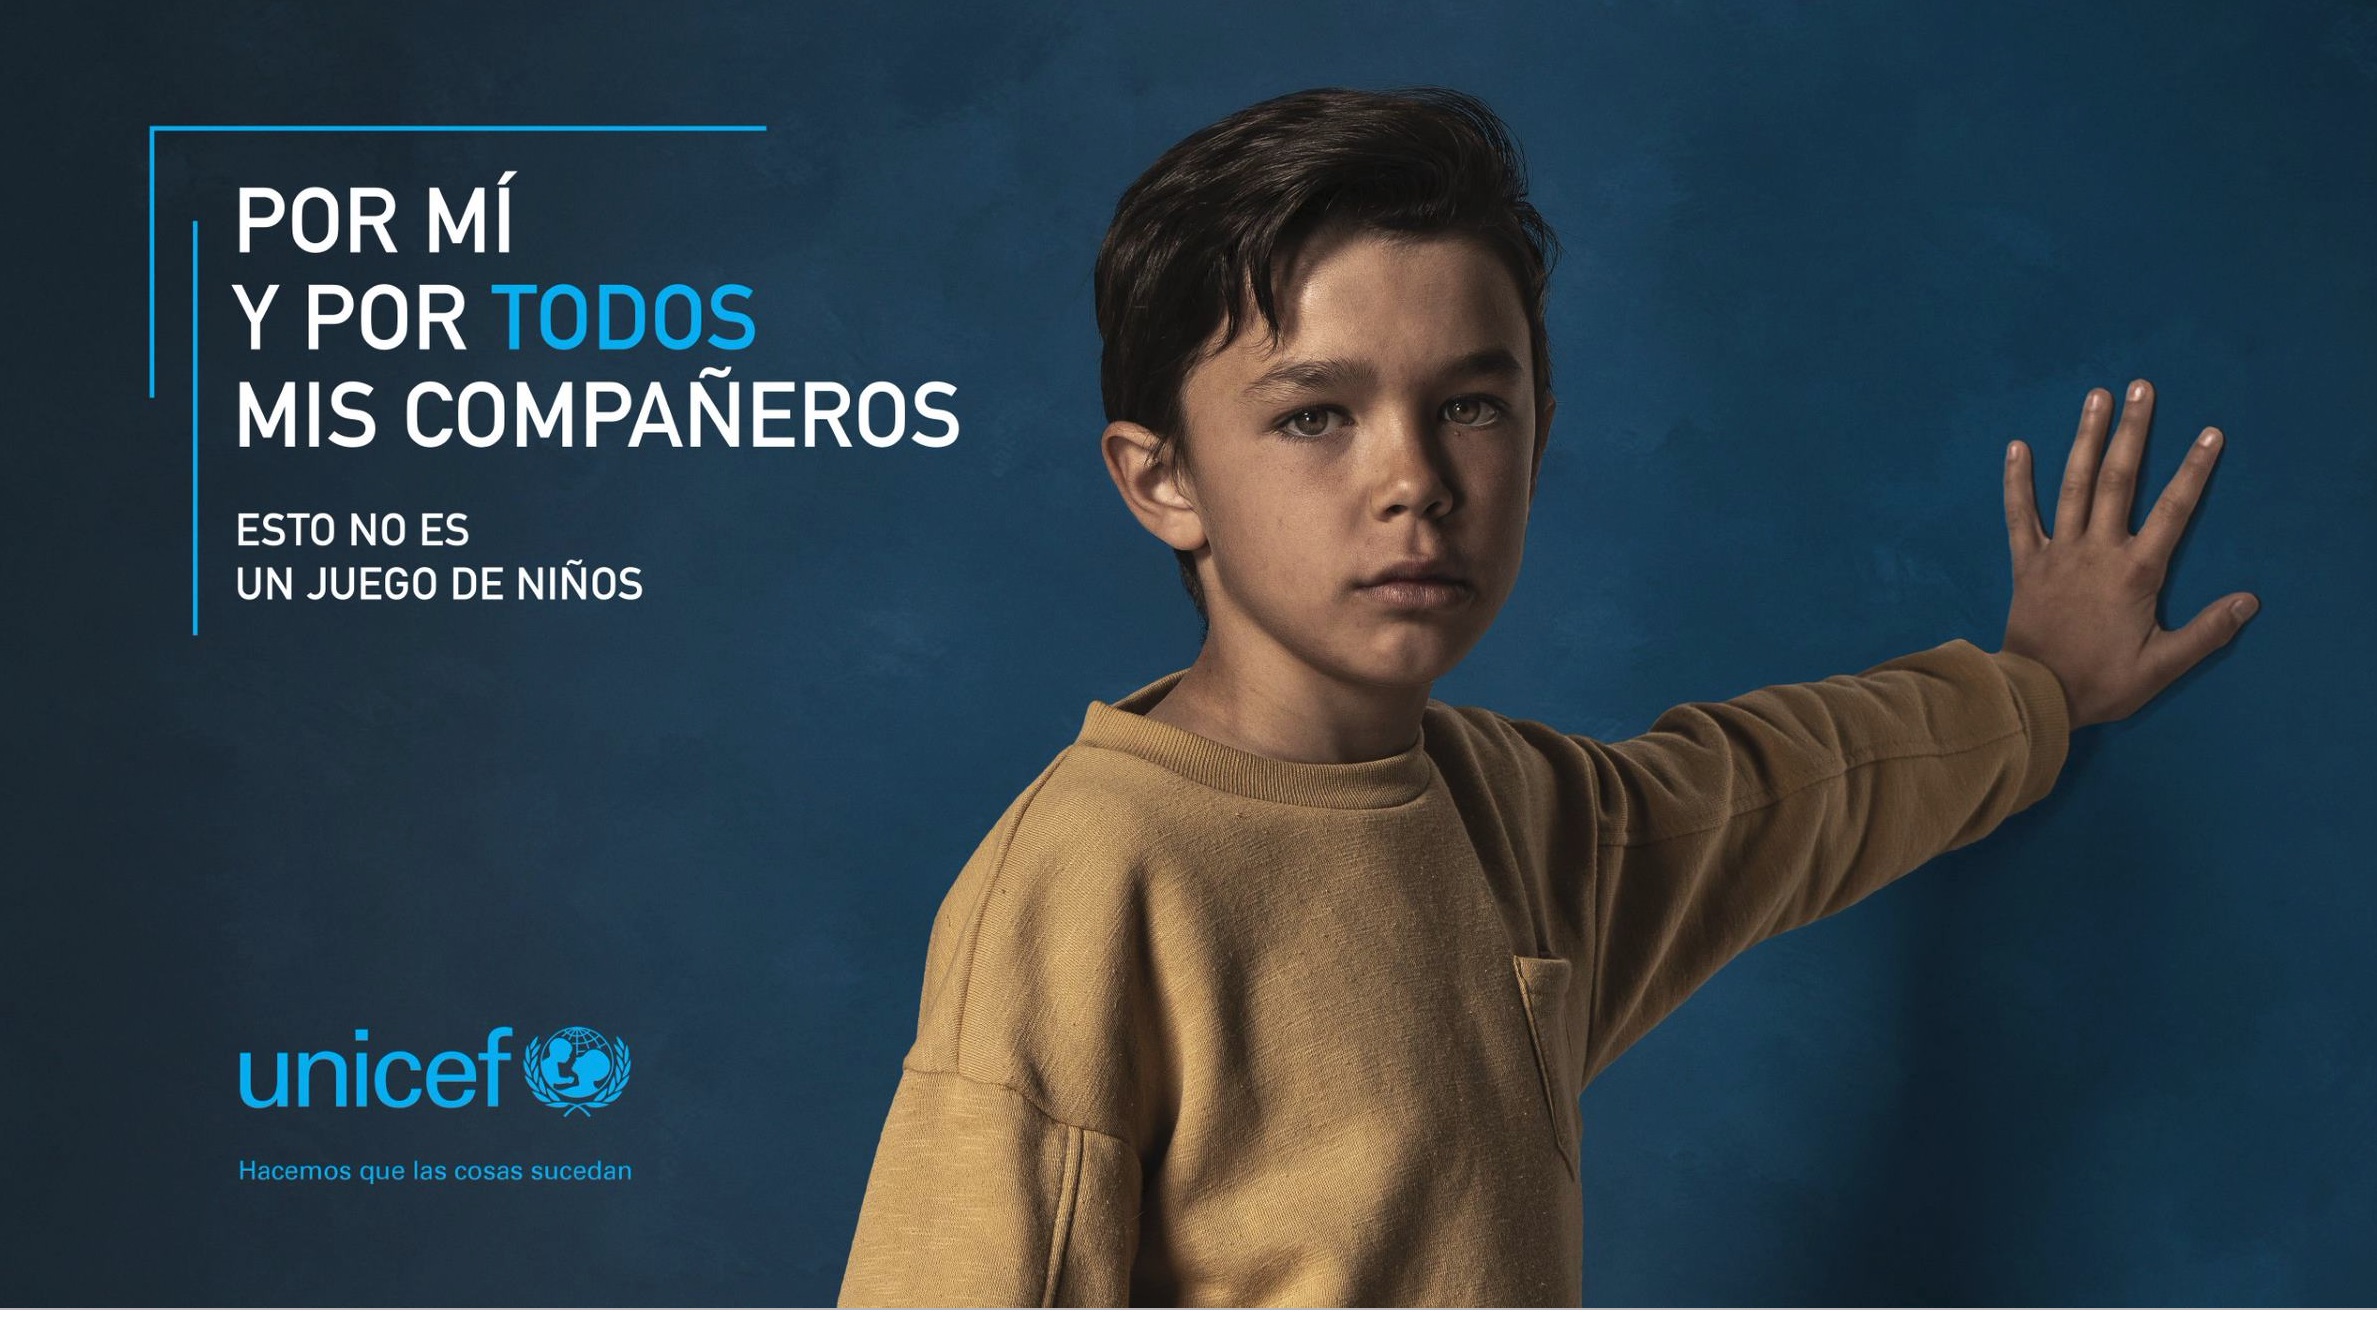 gyro, Madrid , Por mí , y por todos mis compañeros, campaña integrada , UNICEF Comité Español, programapublicidad,